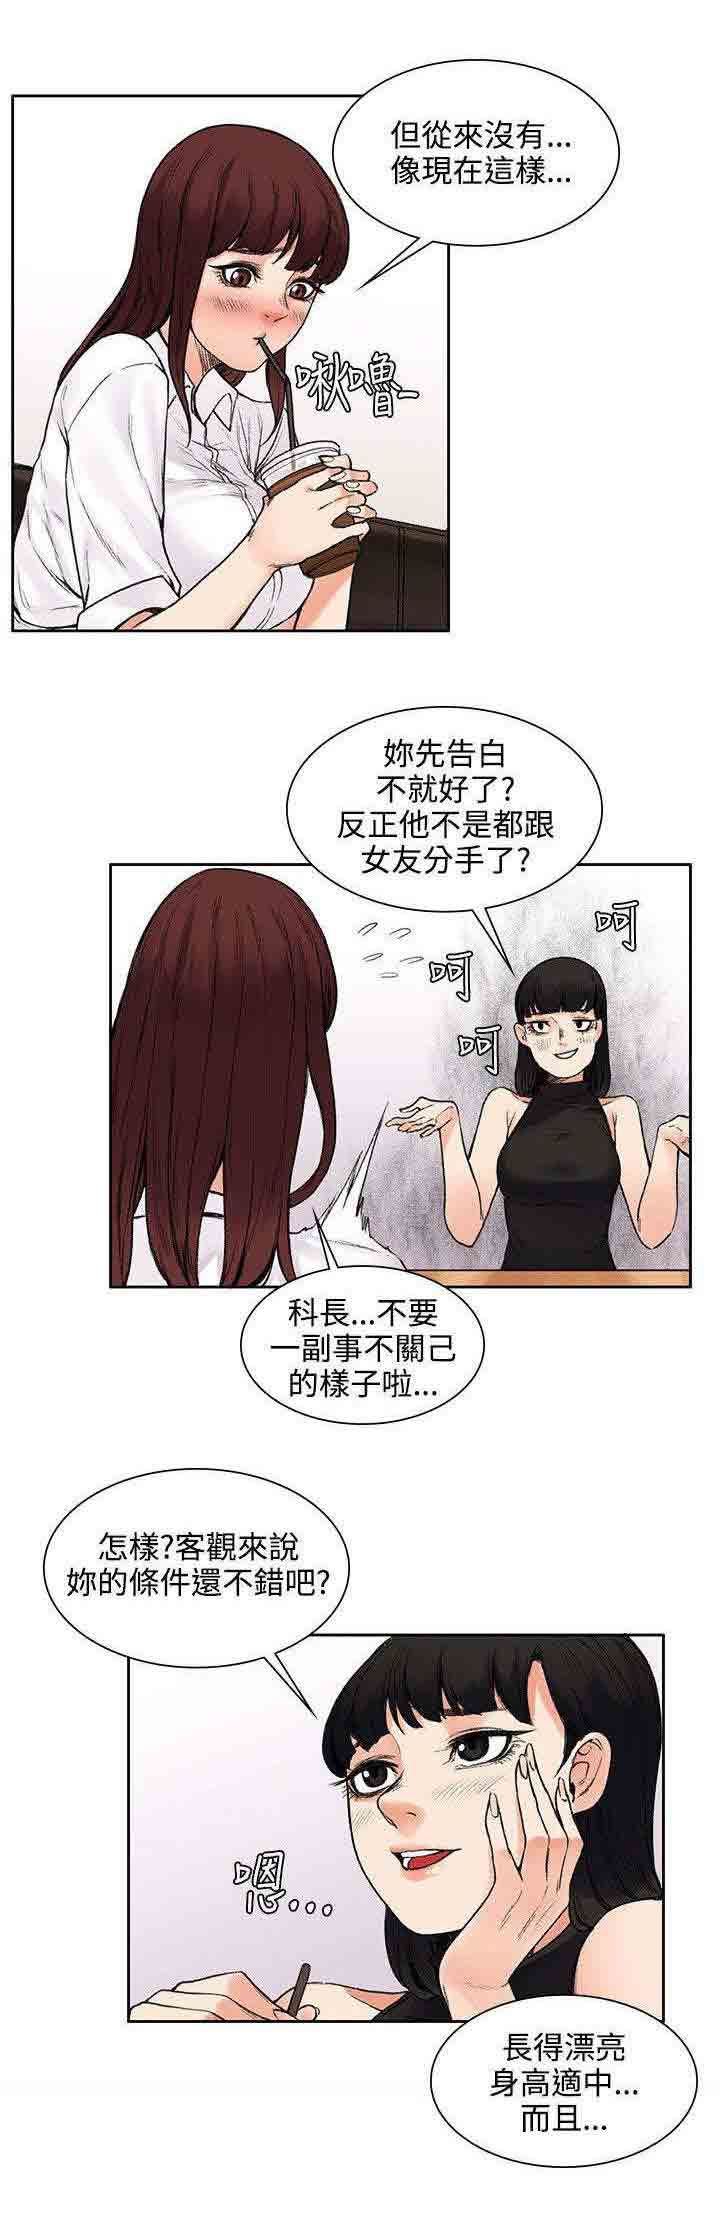 韩国污漫画 甜蜜的香氣 第26话失败品 5